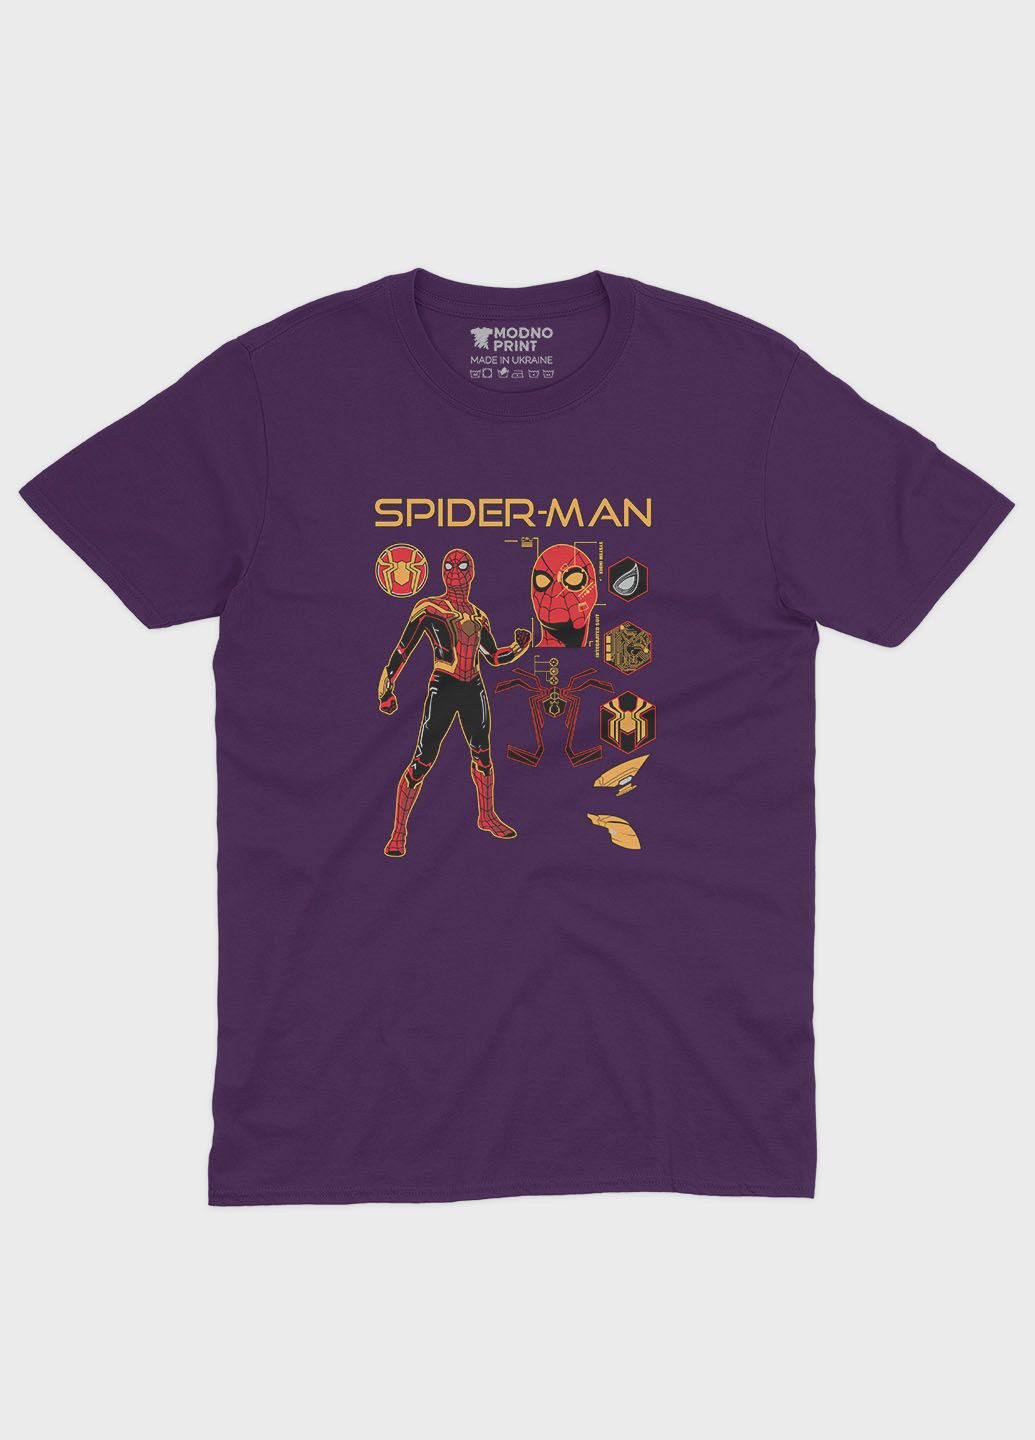 Фиолетовая демисезонная футболка для девочки с принтом супергероя - человек-паук (ts001-1-dby-006-014-095-g) Modno